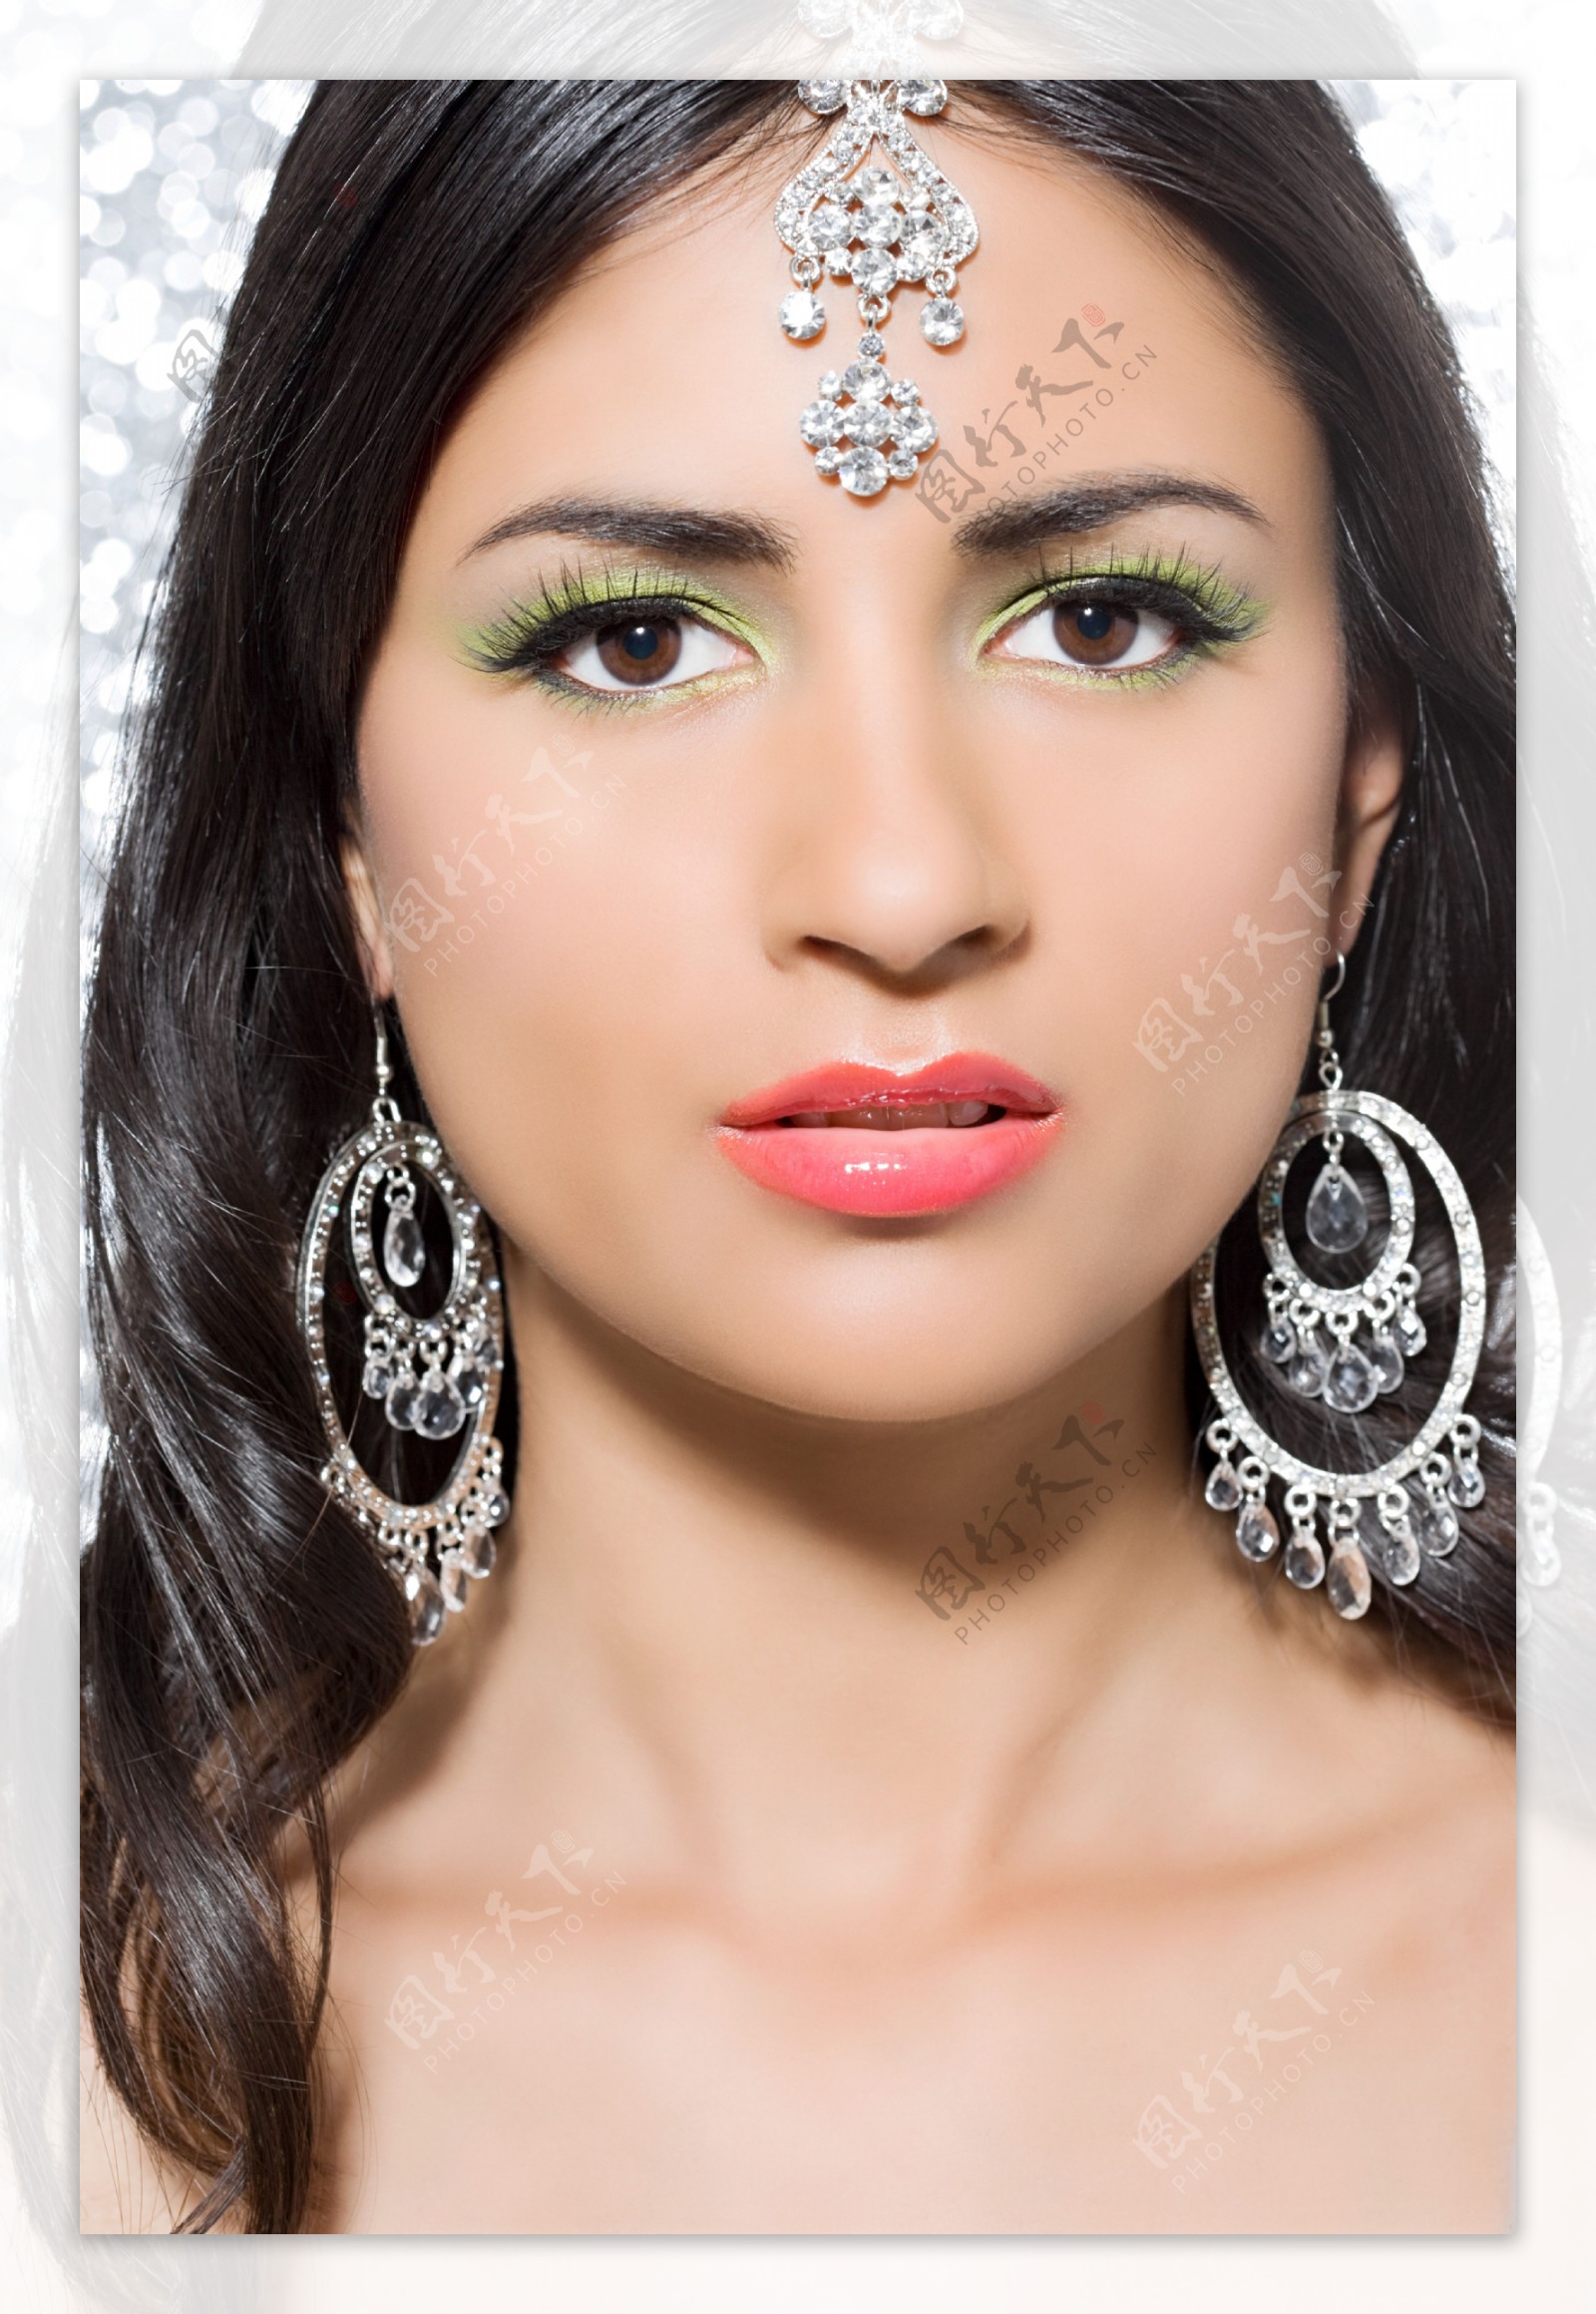 戴耳环化浓妆的印度美女图片